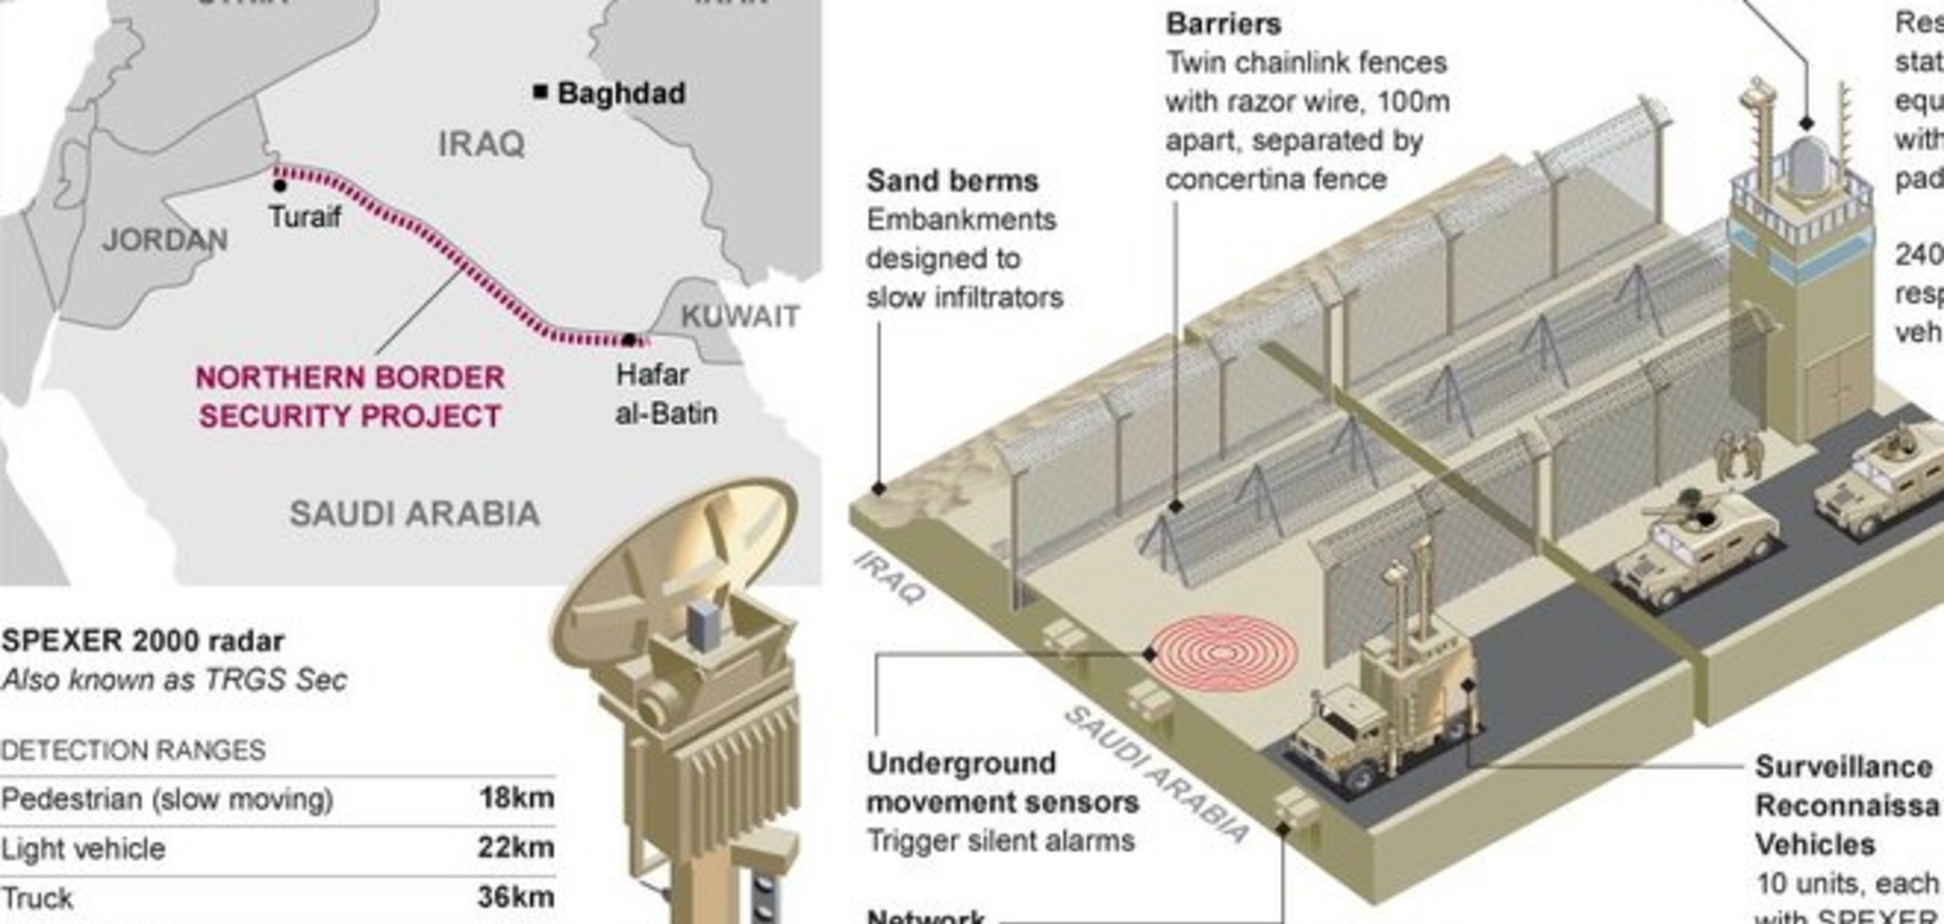 Саудовская Аравия решила закрыться от боевиков 'ИГ' 960-километровой стеной